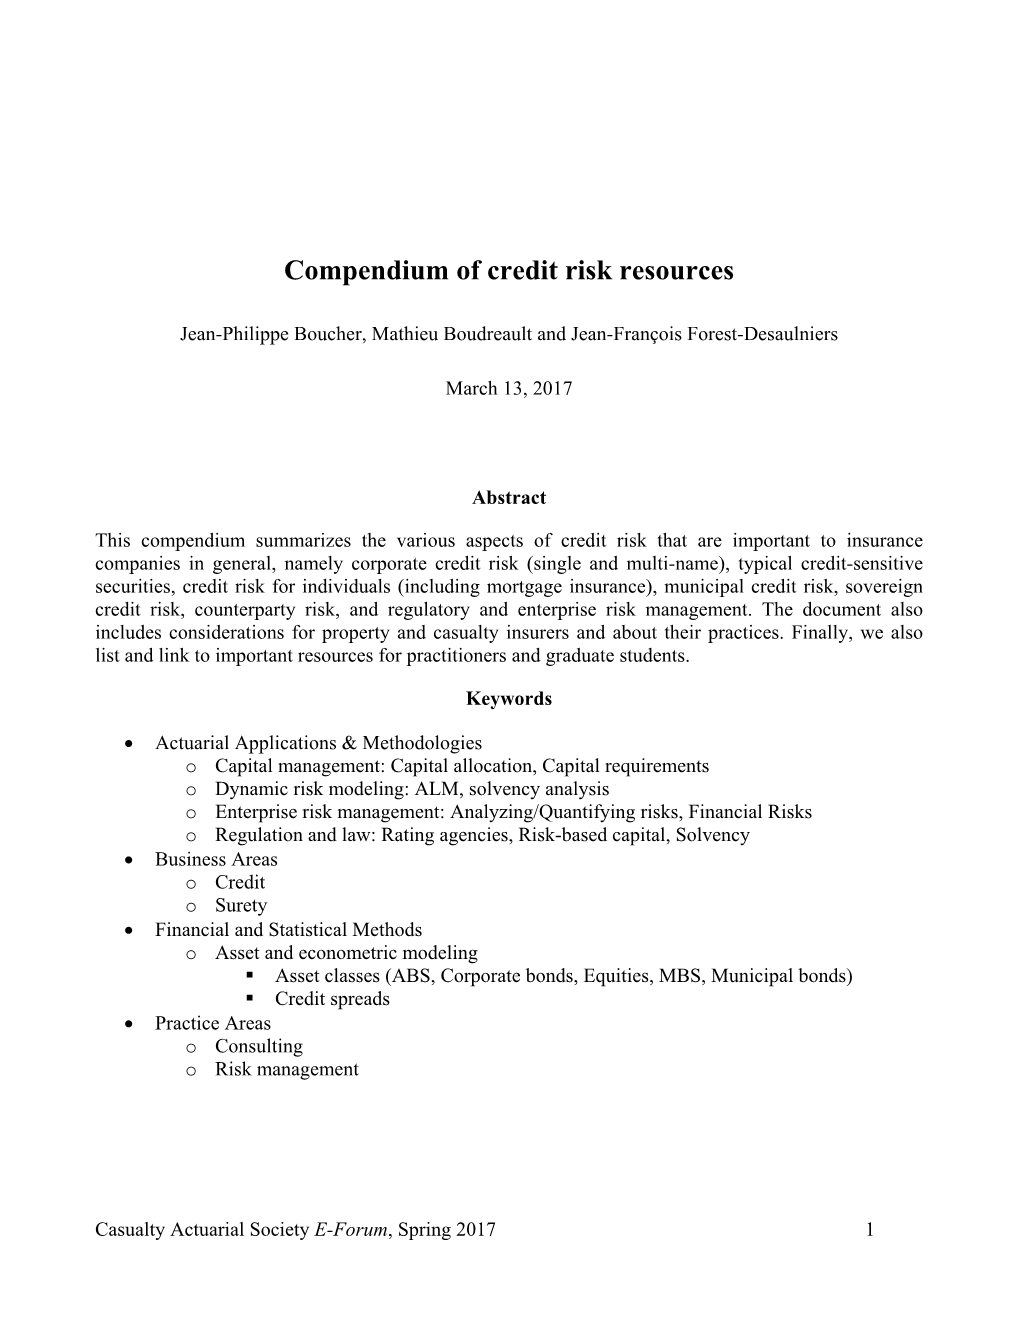 Compendium of Credit Risk Resources